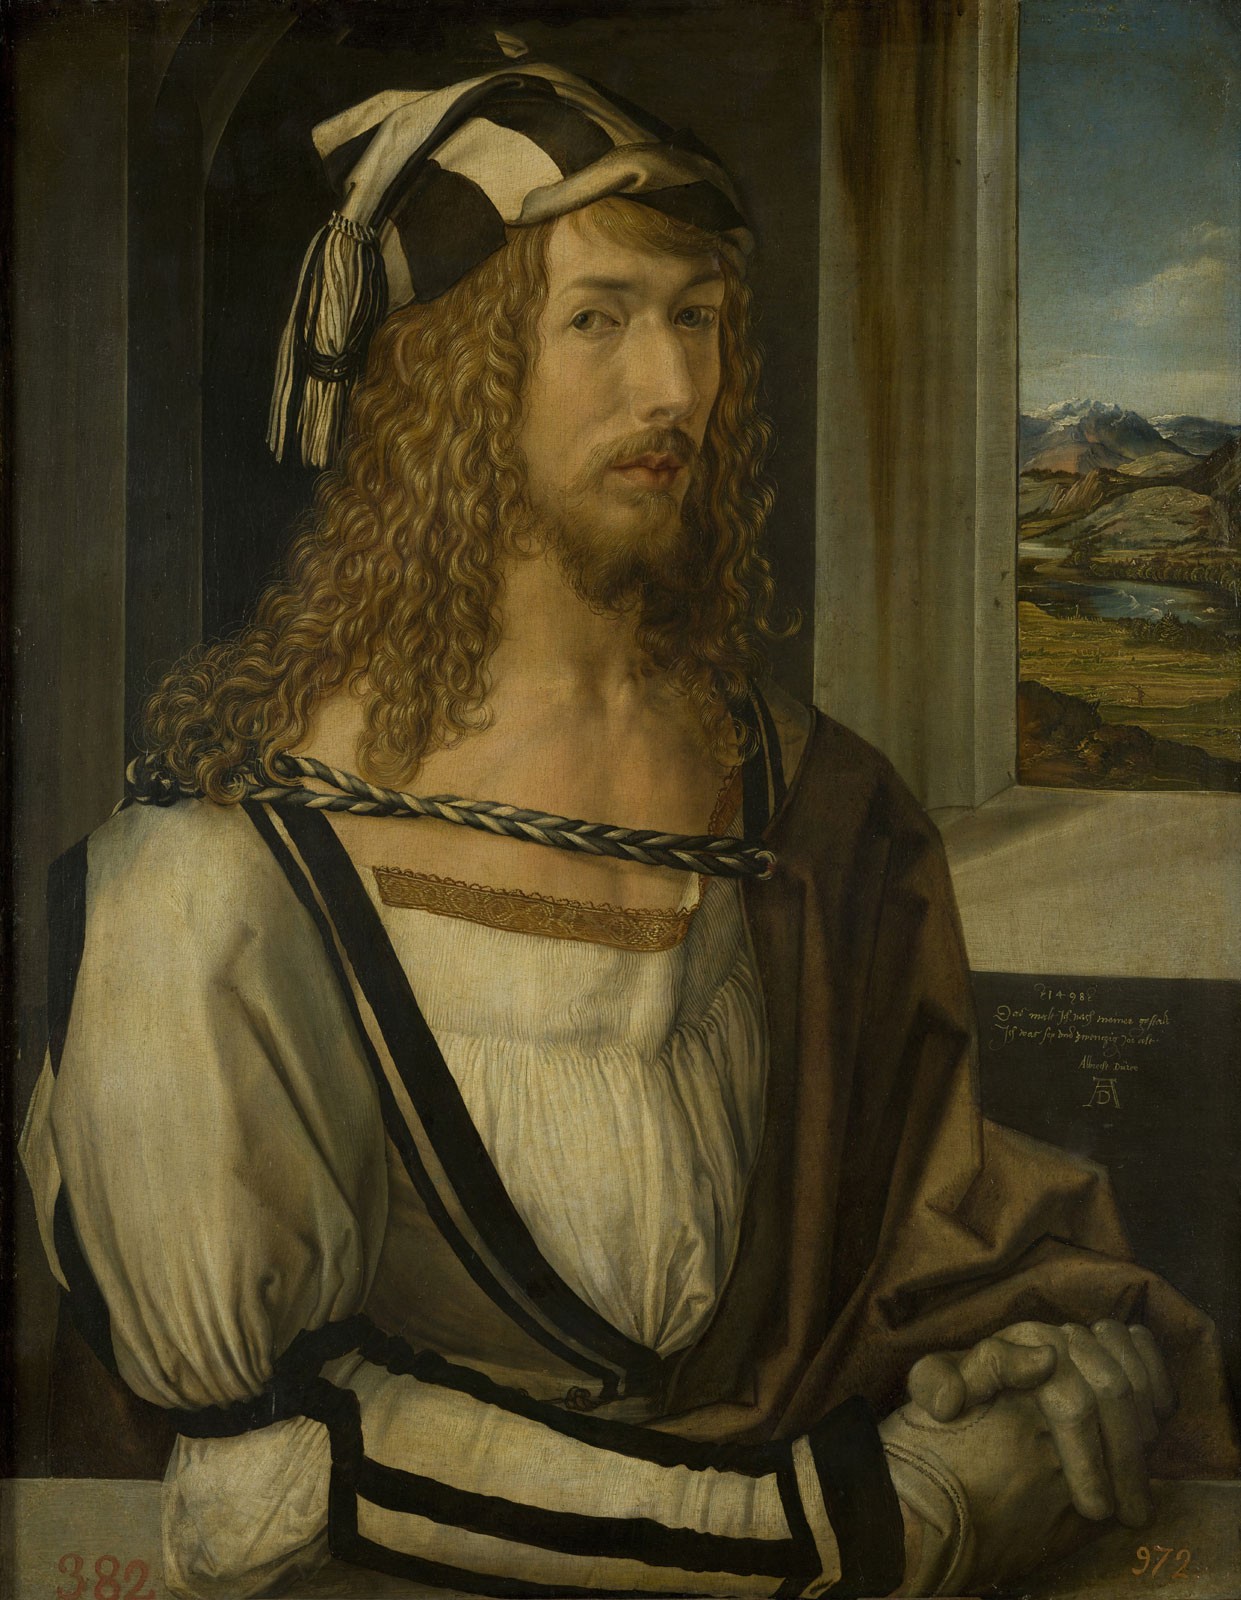 Self-Portrait, c.1498, Oil on Panel